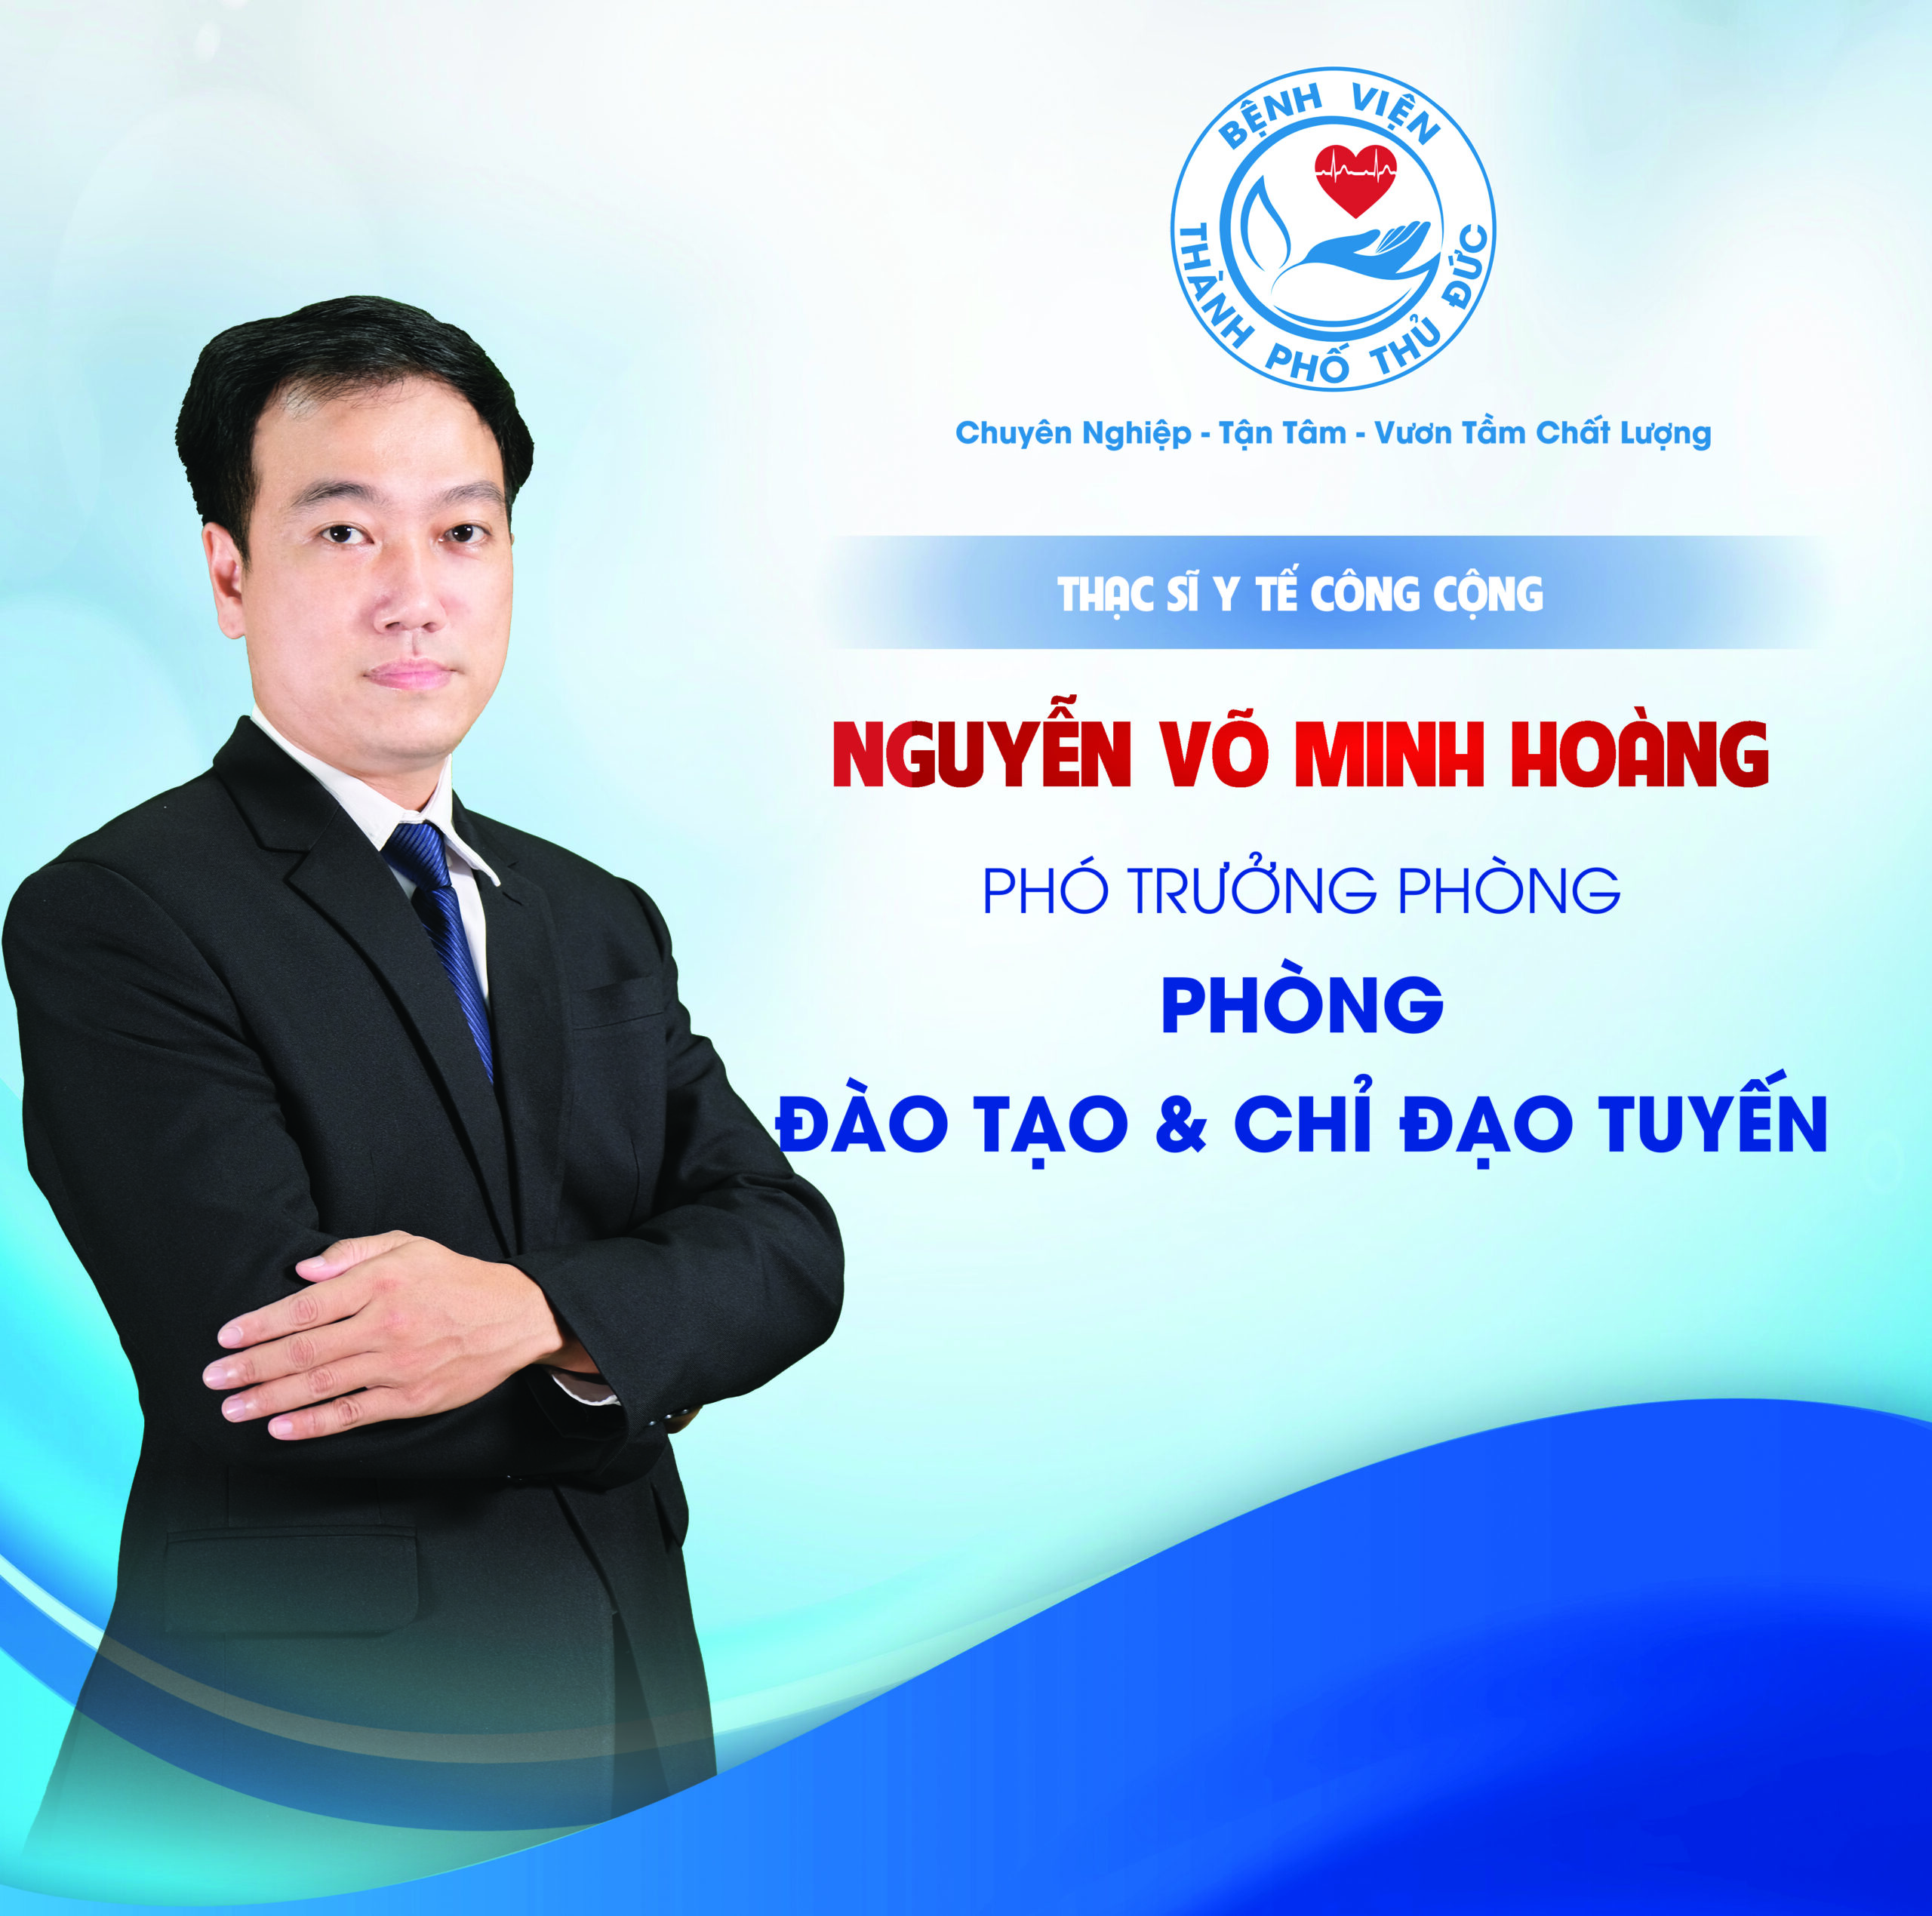 ThS. Nguyễn Võ Minh Hoàng - Phó Trưởng phòng Đào tạo & Chỉ đạo tuyến